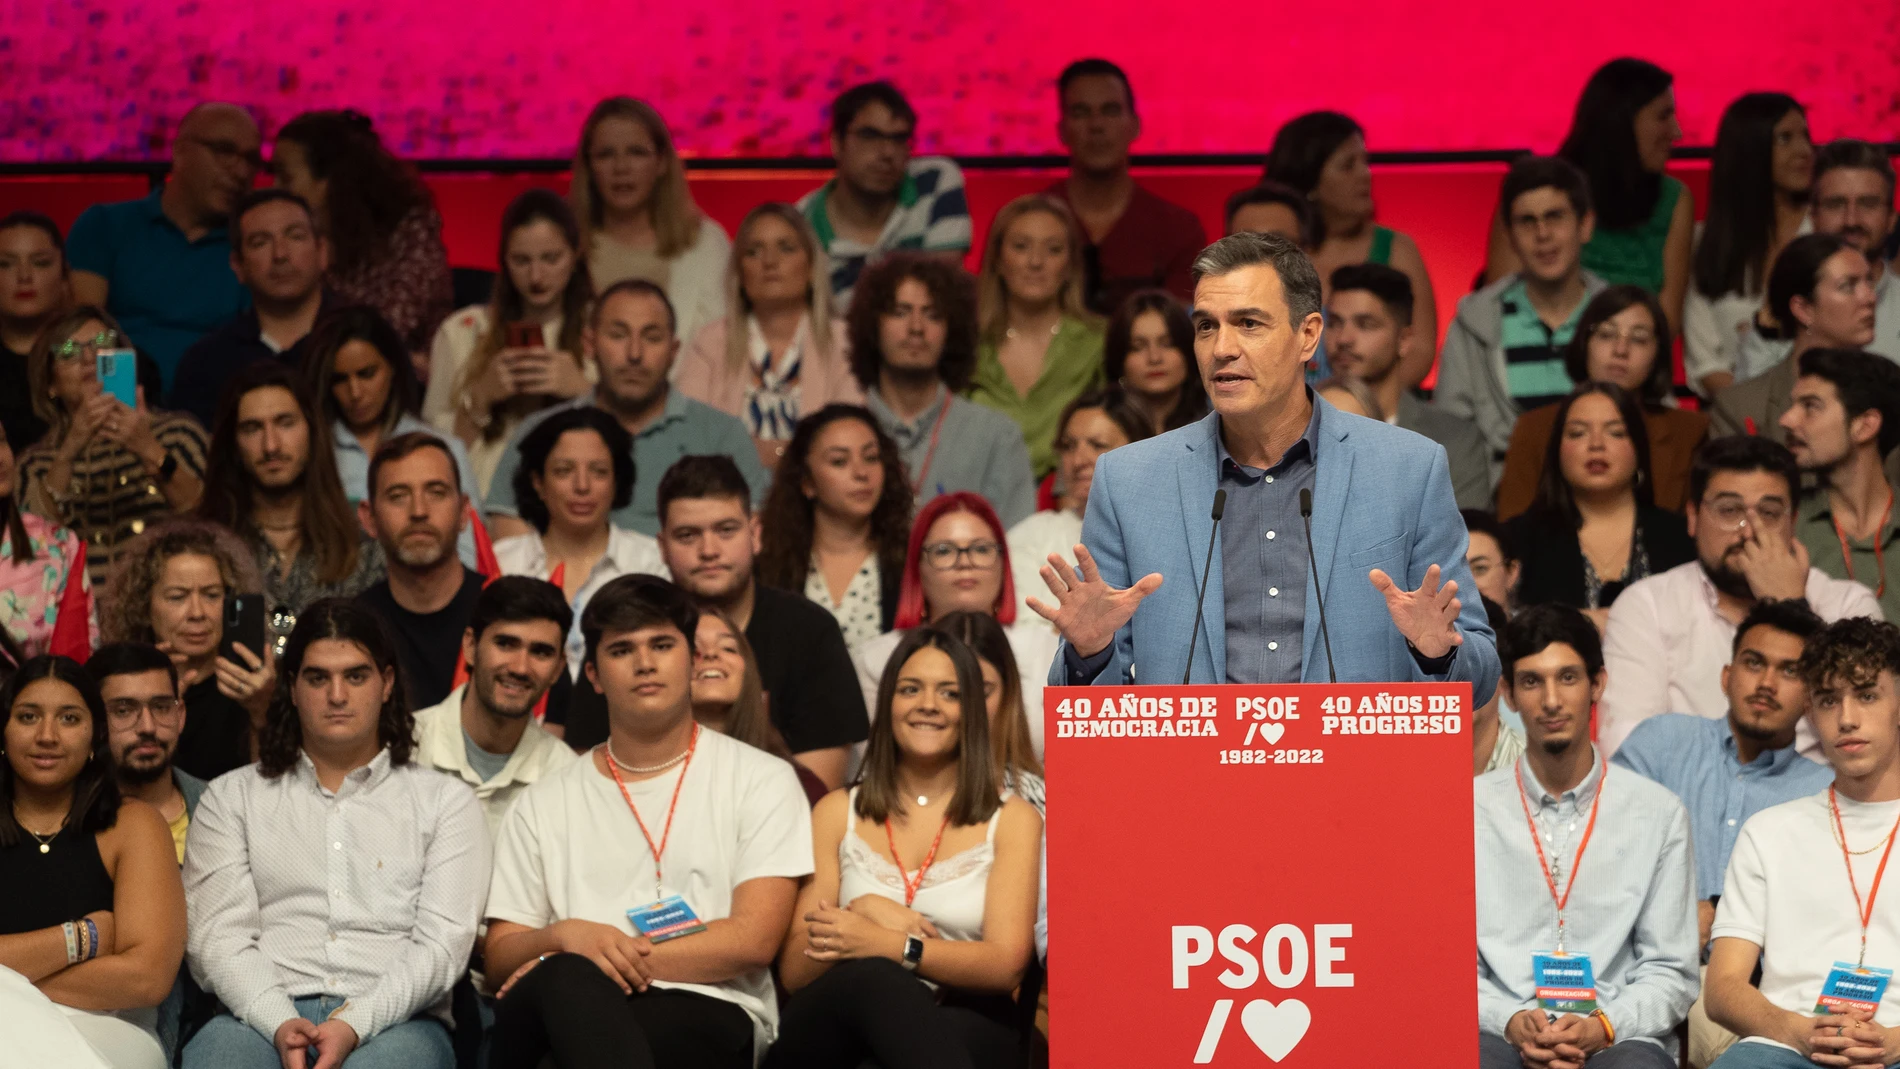 El presidente del Gobierno Pedro Sánchez dirigiéndose al público en el acto organizado por el PSOE para conmemorar el 40 aniversario de la primera victoria electoral socialista en 1982